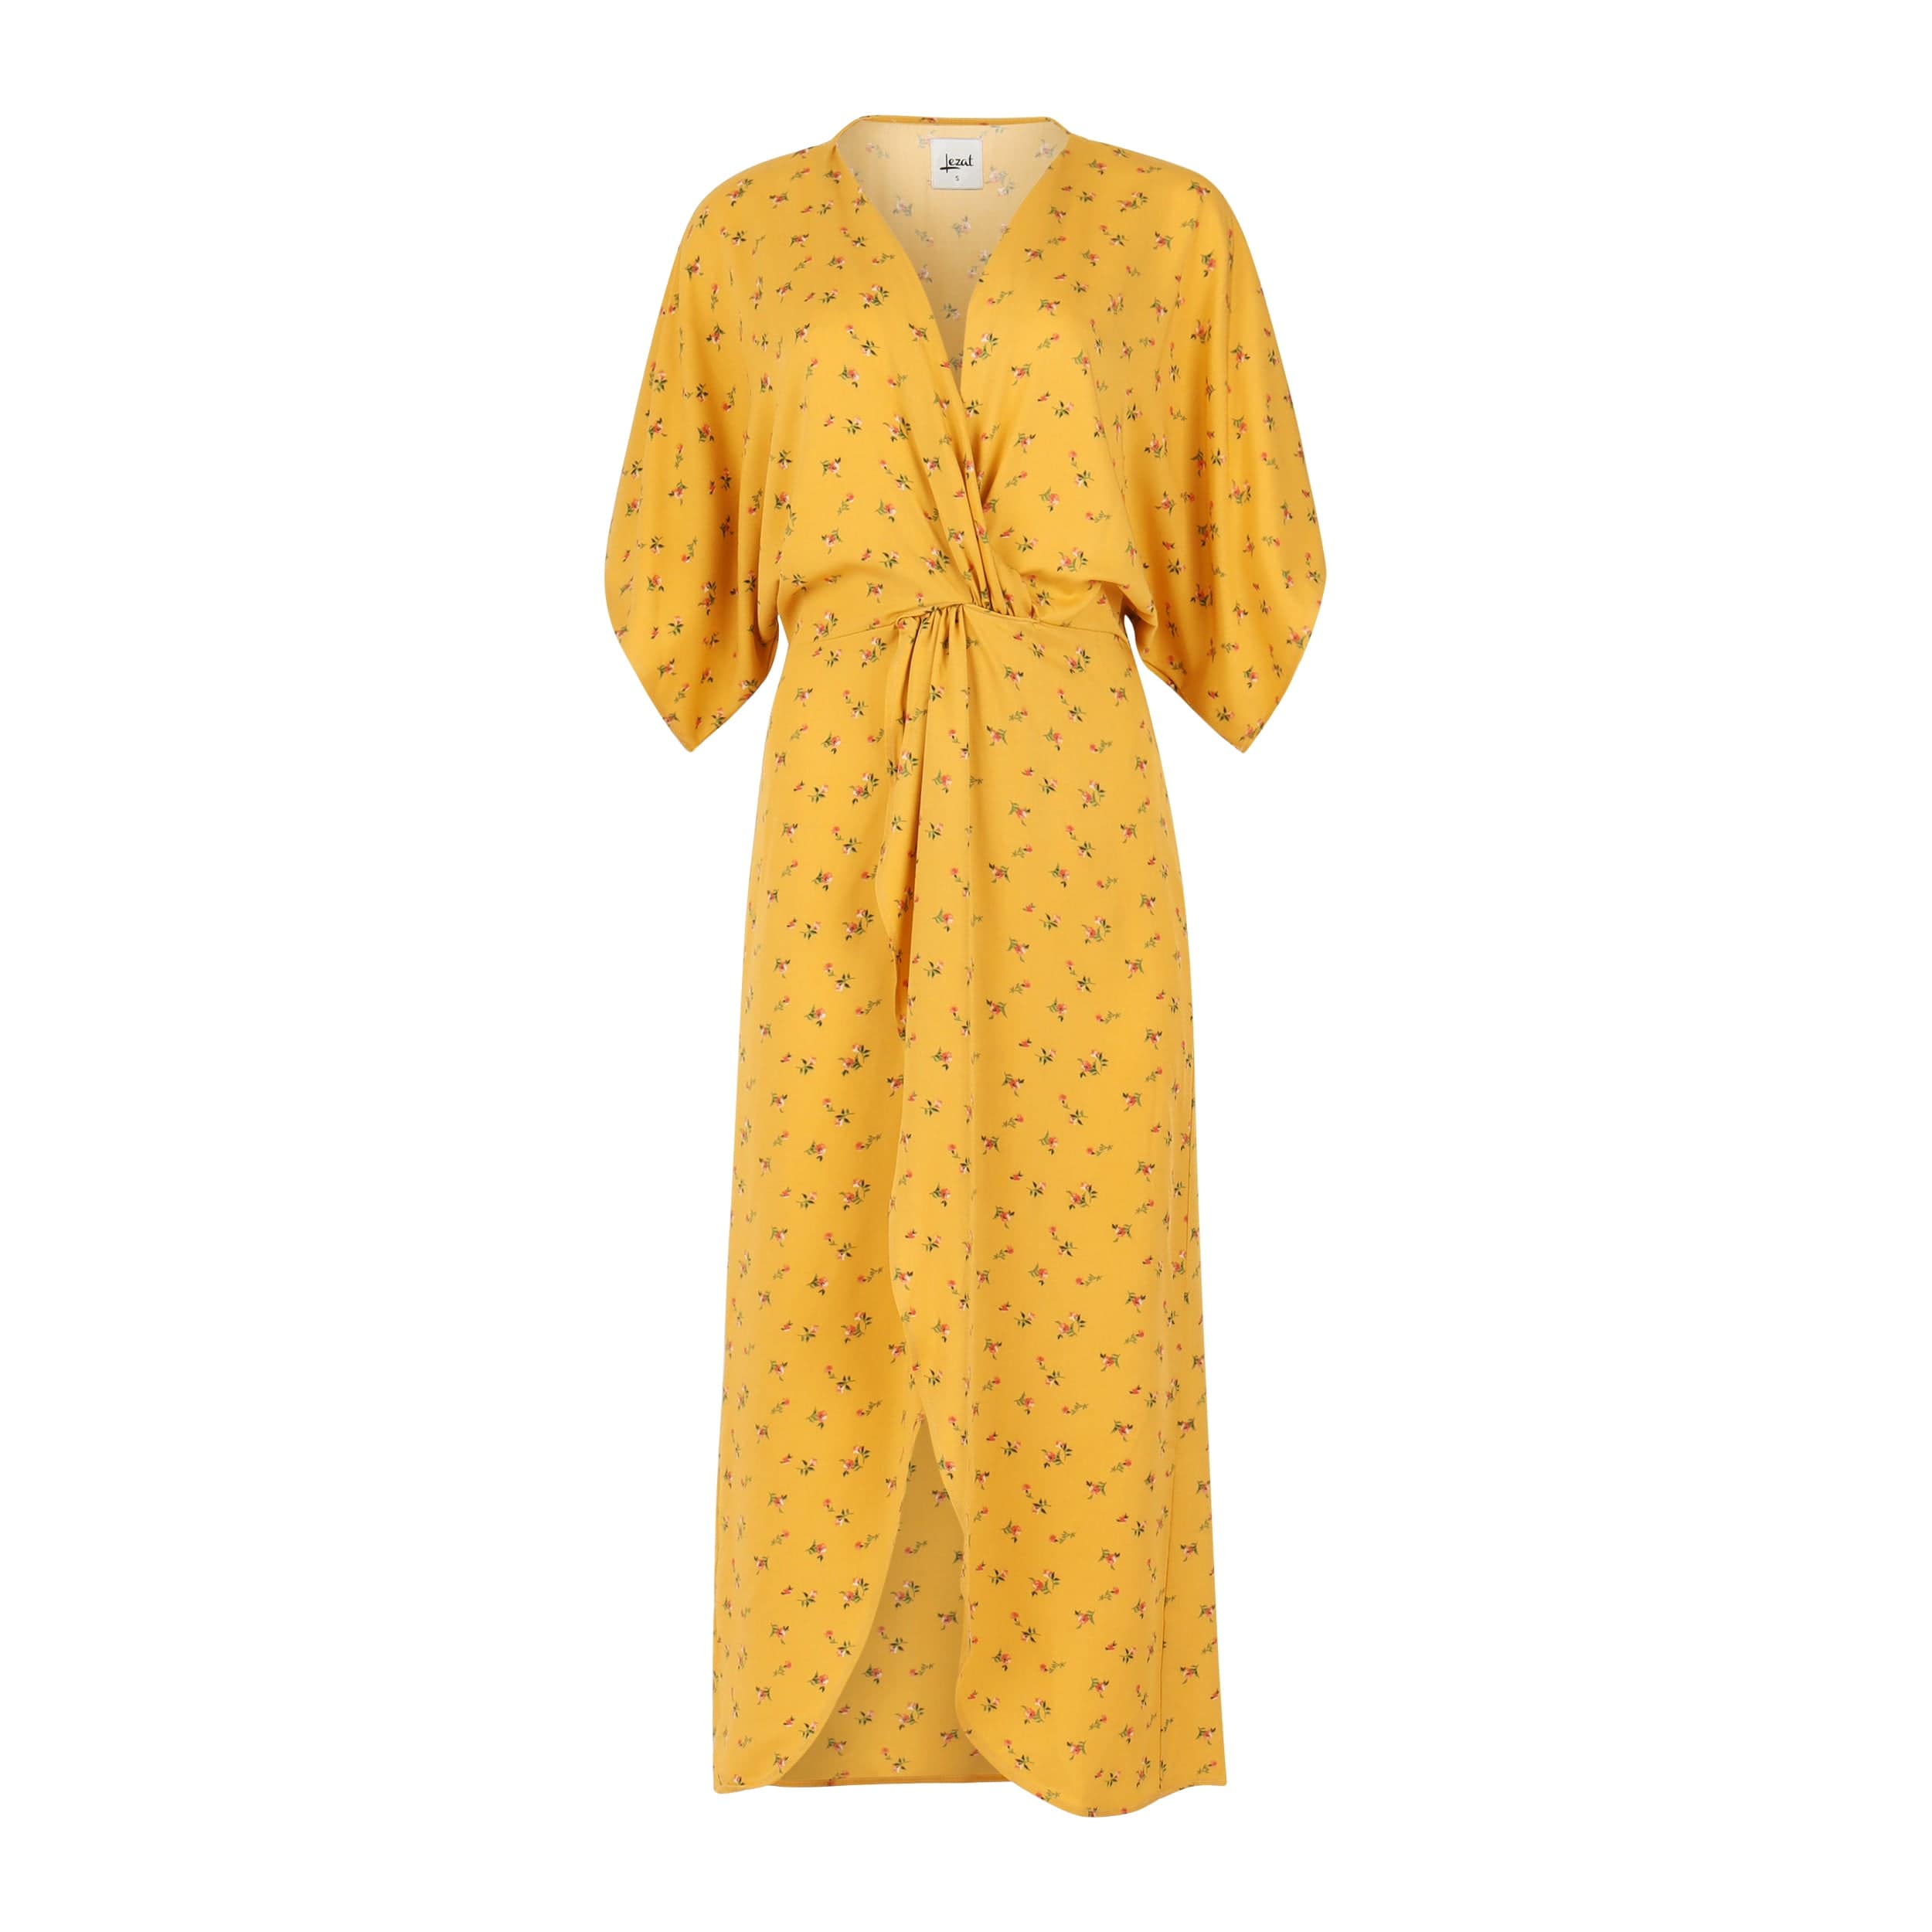 Lezat Women's Joey Maxi Dress - Golden Daisy